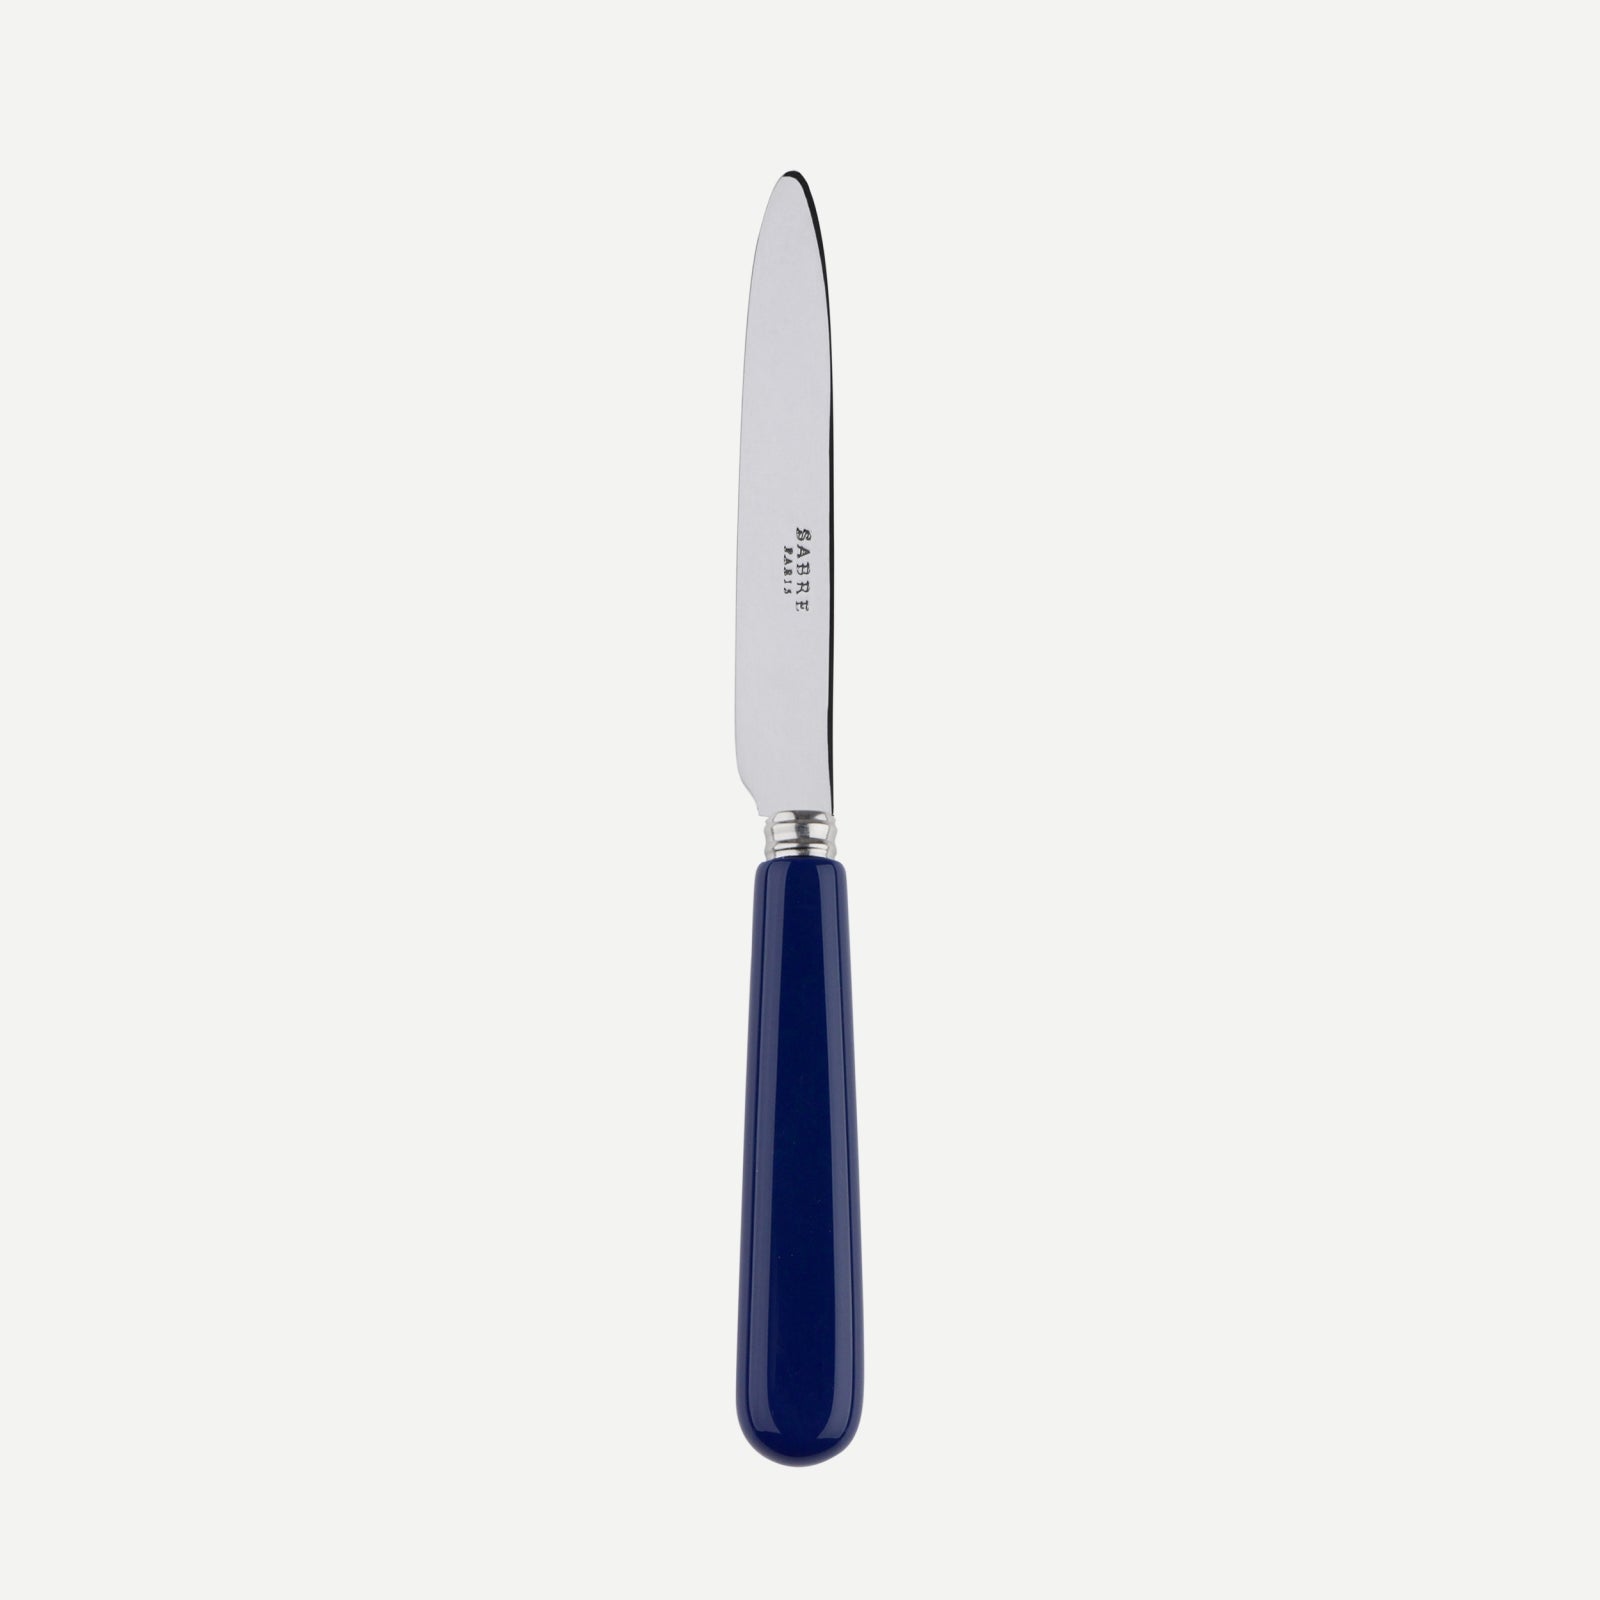 Petit couteau - Pop unis - Bleu marine